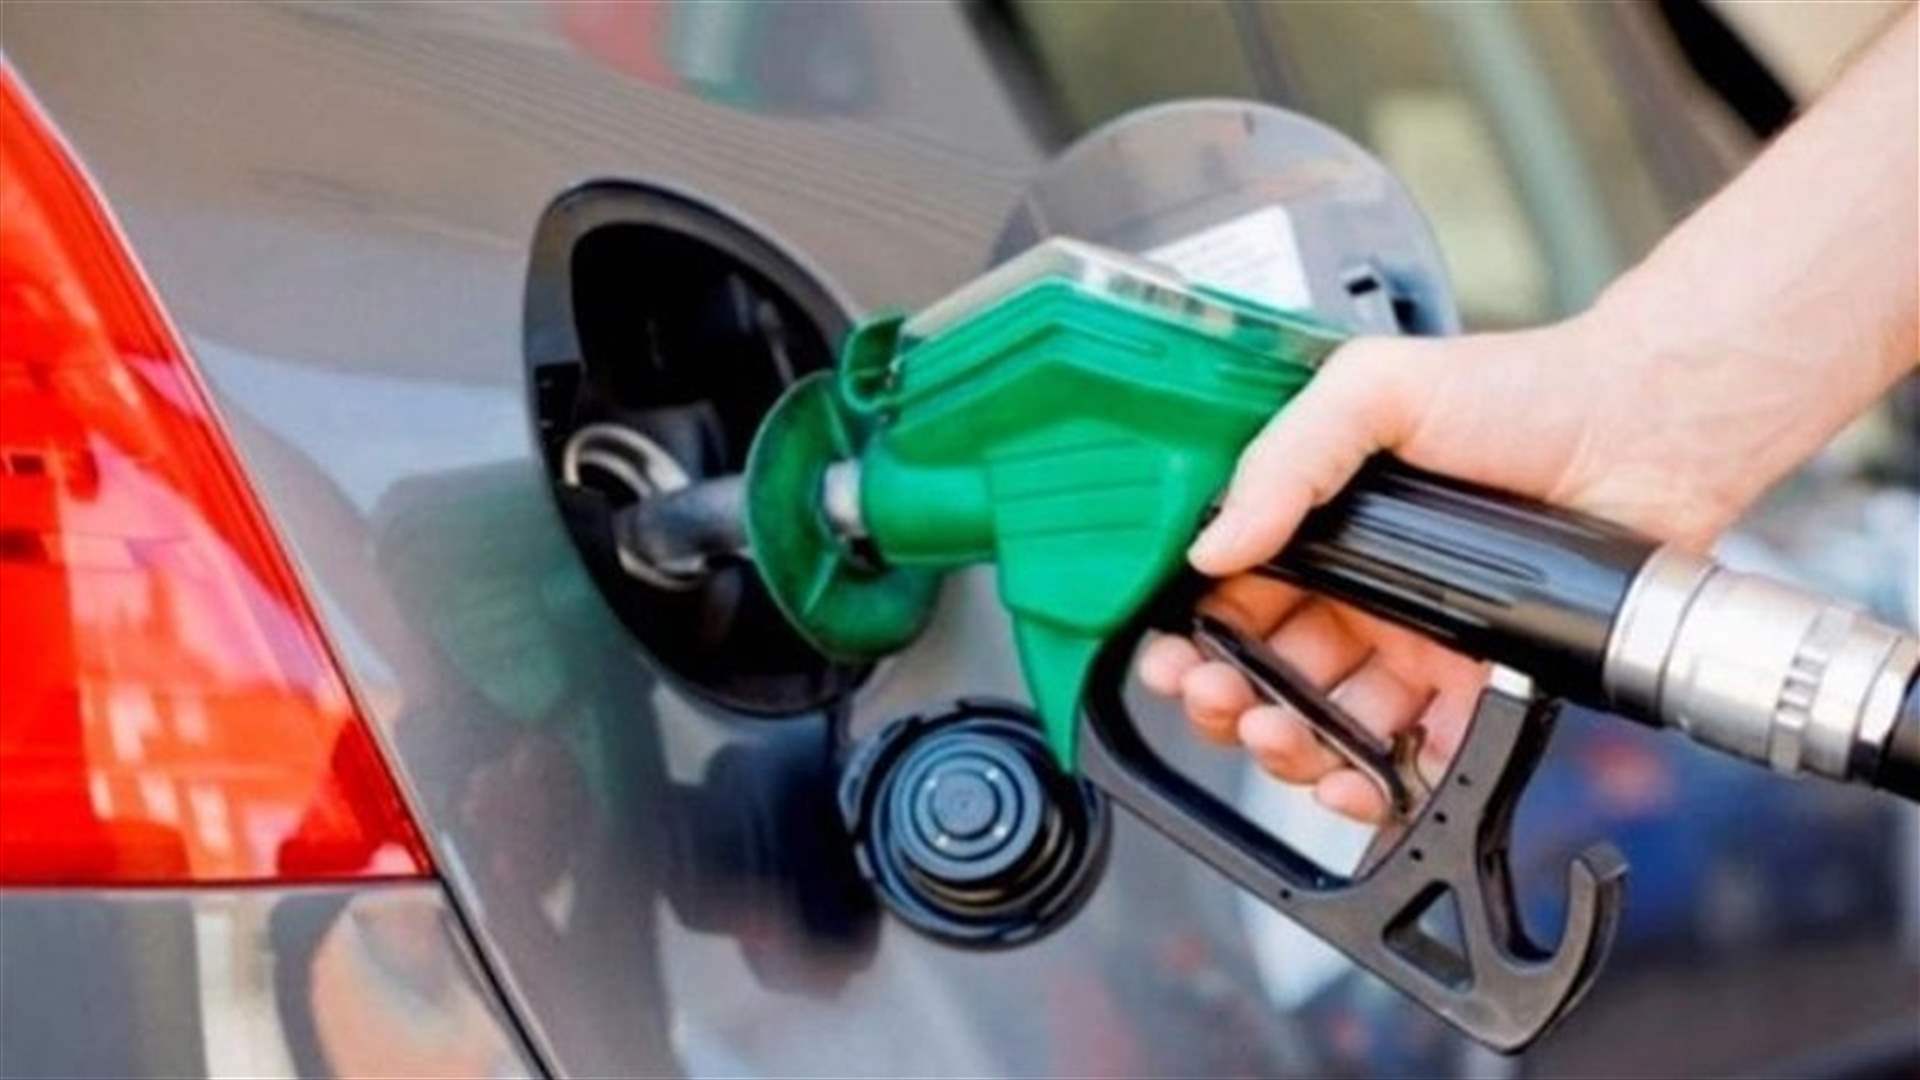 ارتفاع في أسعار البنزين والمازوت... ماذا عن الغاز؟